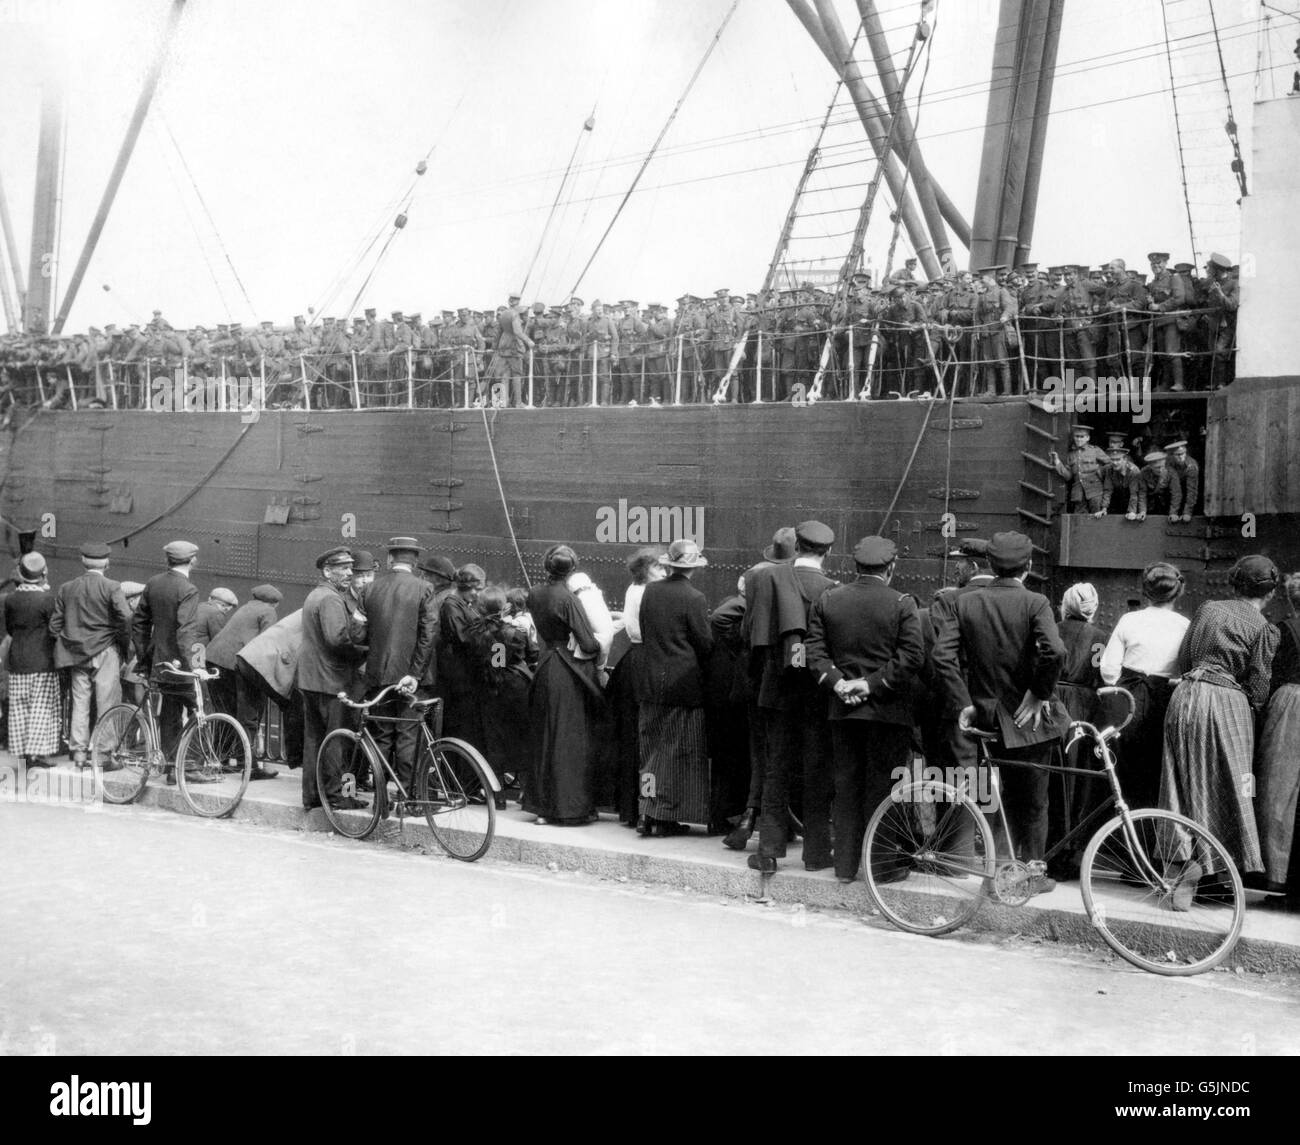 Erster Weltkrieg - Britische Armee - Transport. Britische Truppen treffen in St. Nazaire in Frankreich ein. Stockfoto